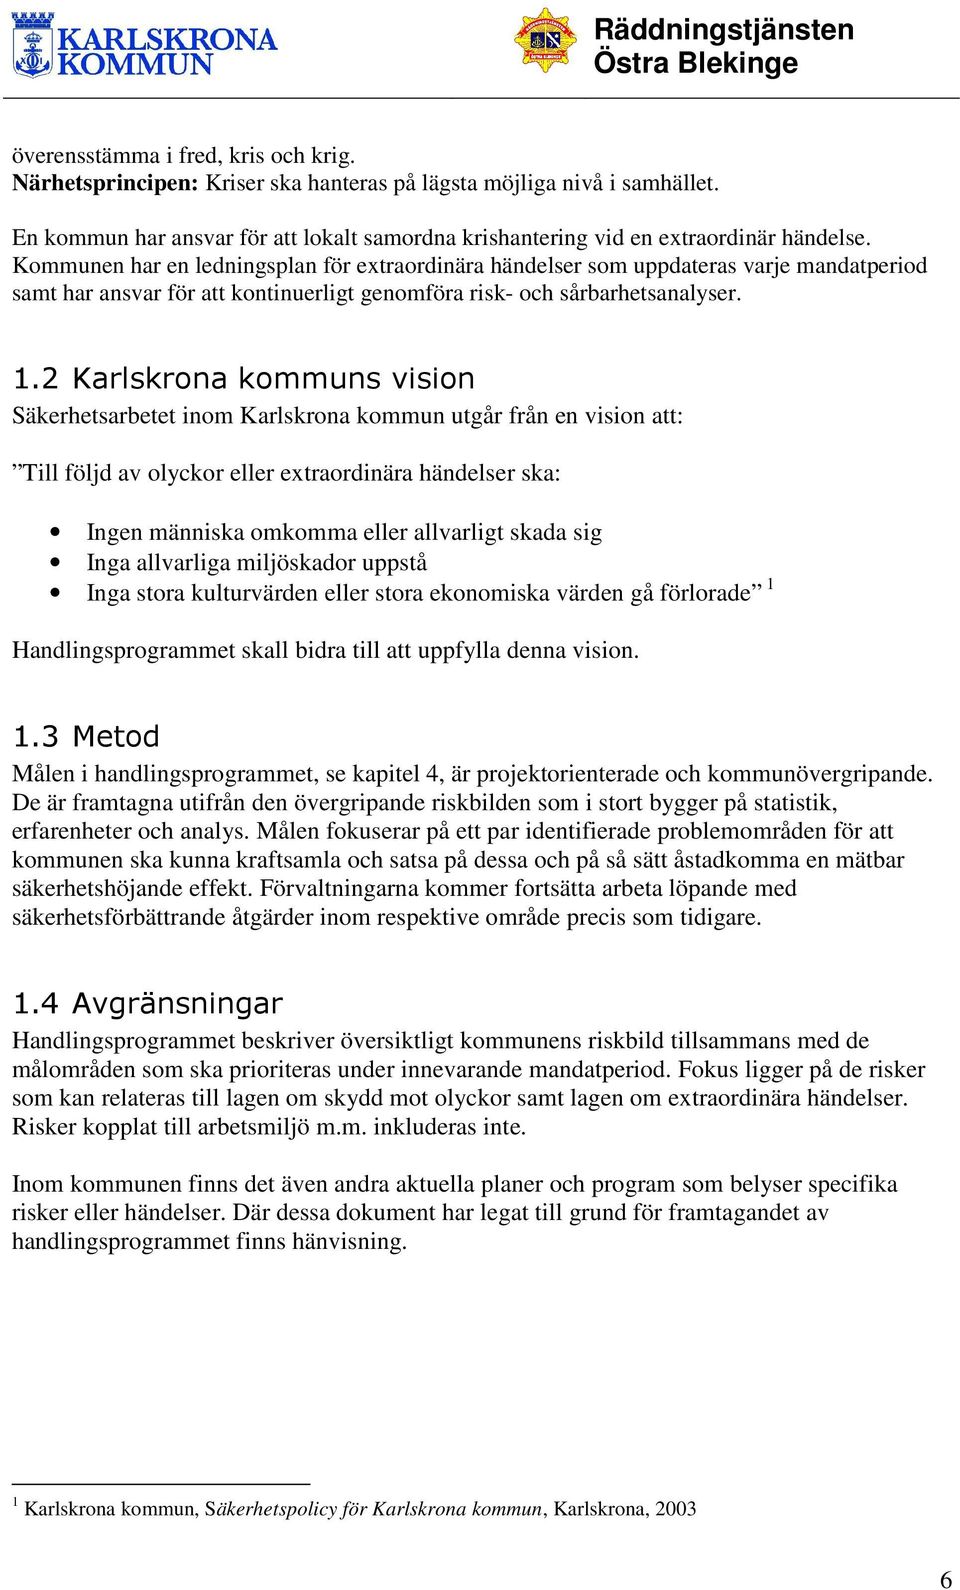 2 Karlskrona kommuns vision Säkerhetsarbetet inom Karlskrona kommun utgår från en vision att: Till följd av olyckor eller extraordinära händelser ska: Ingen människa omkomma eller allvarligt skada